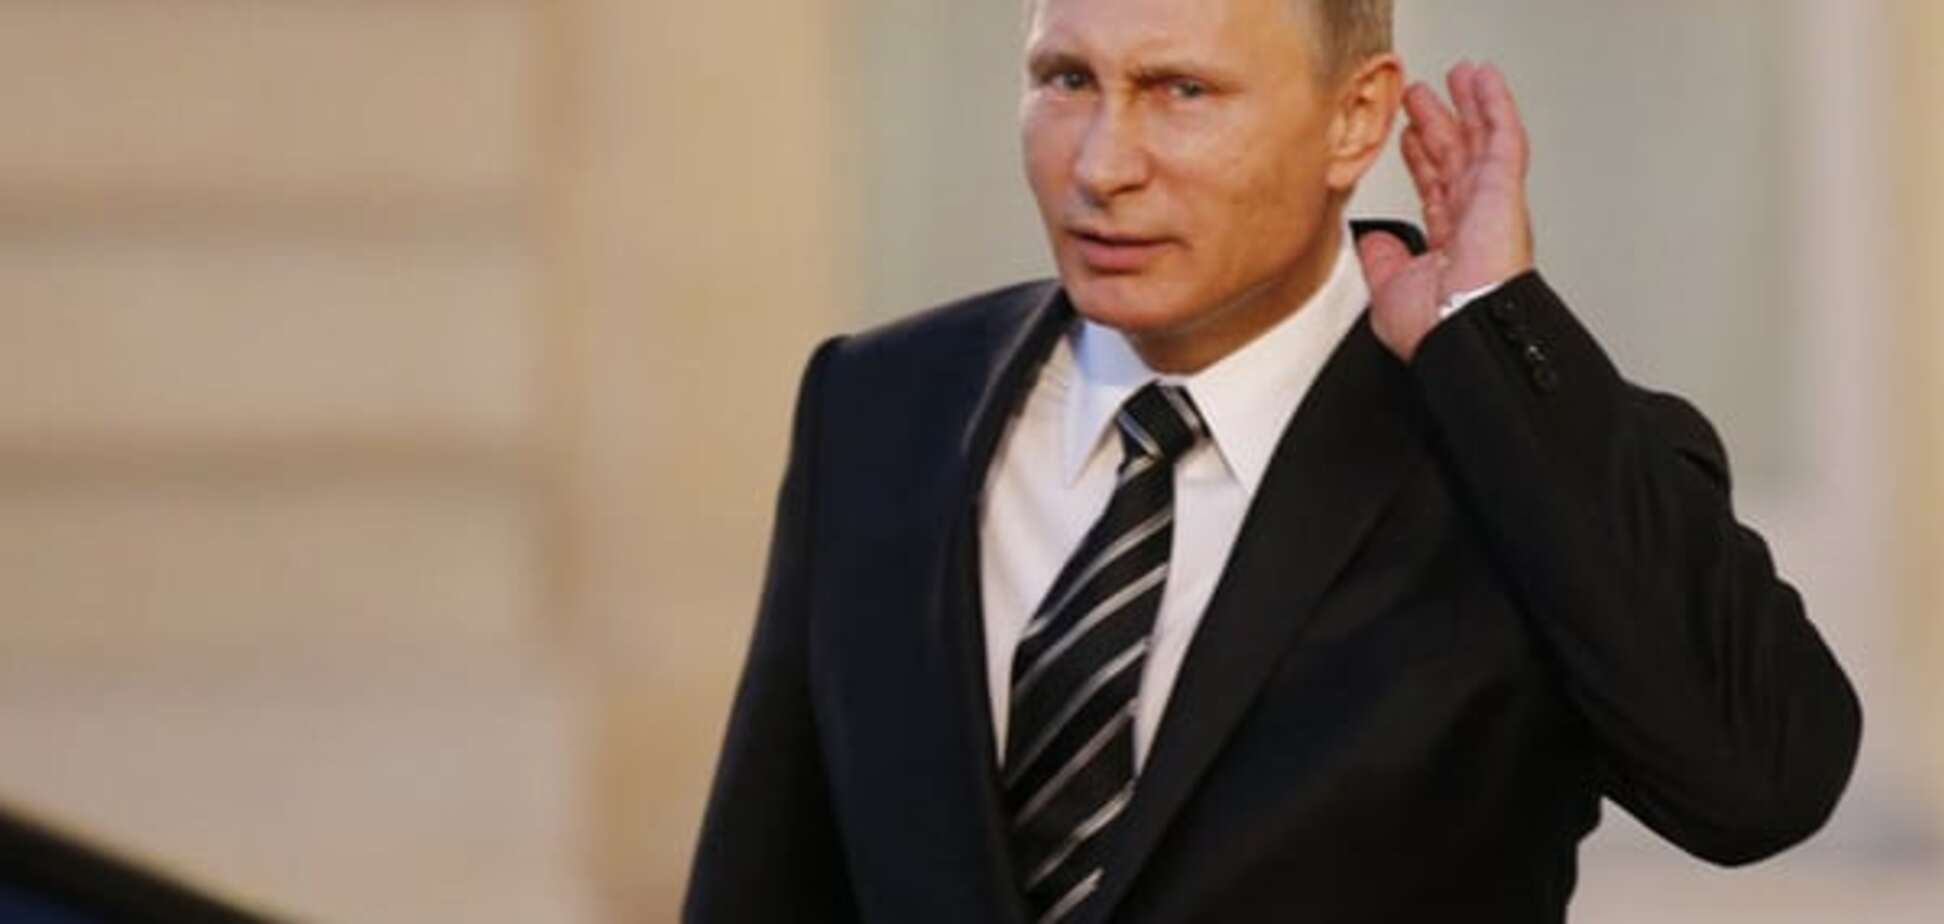 Путин ускакал из Парижа в состоянии бешенства - журналист